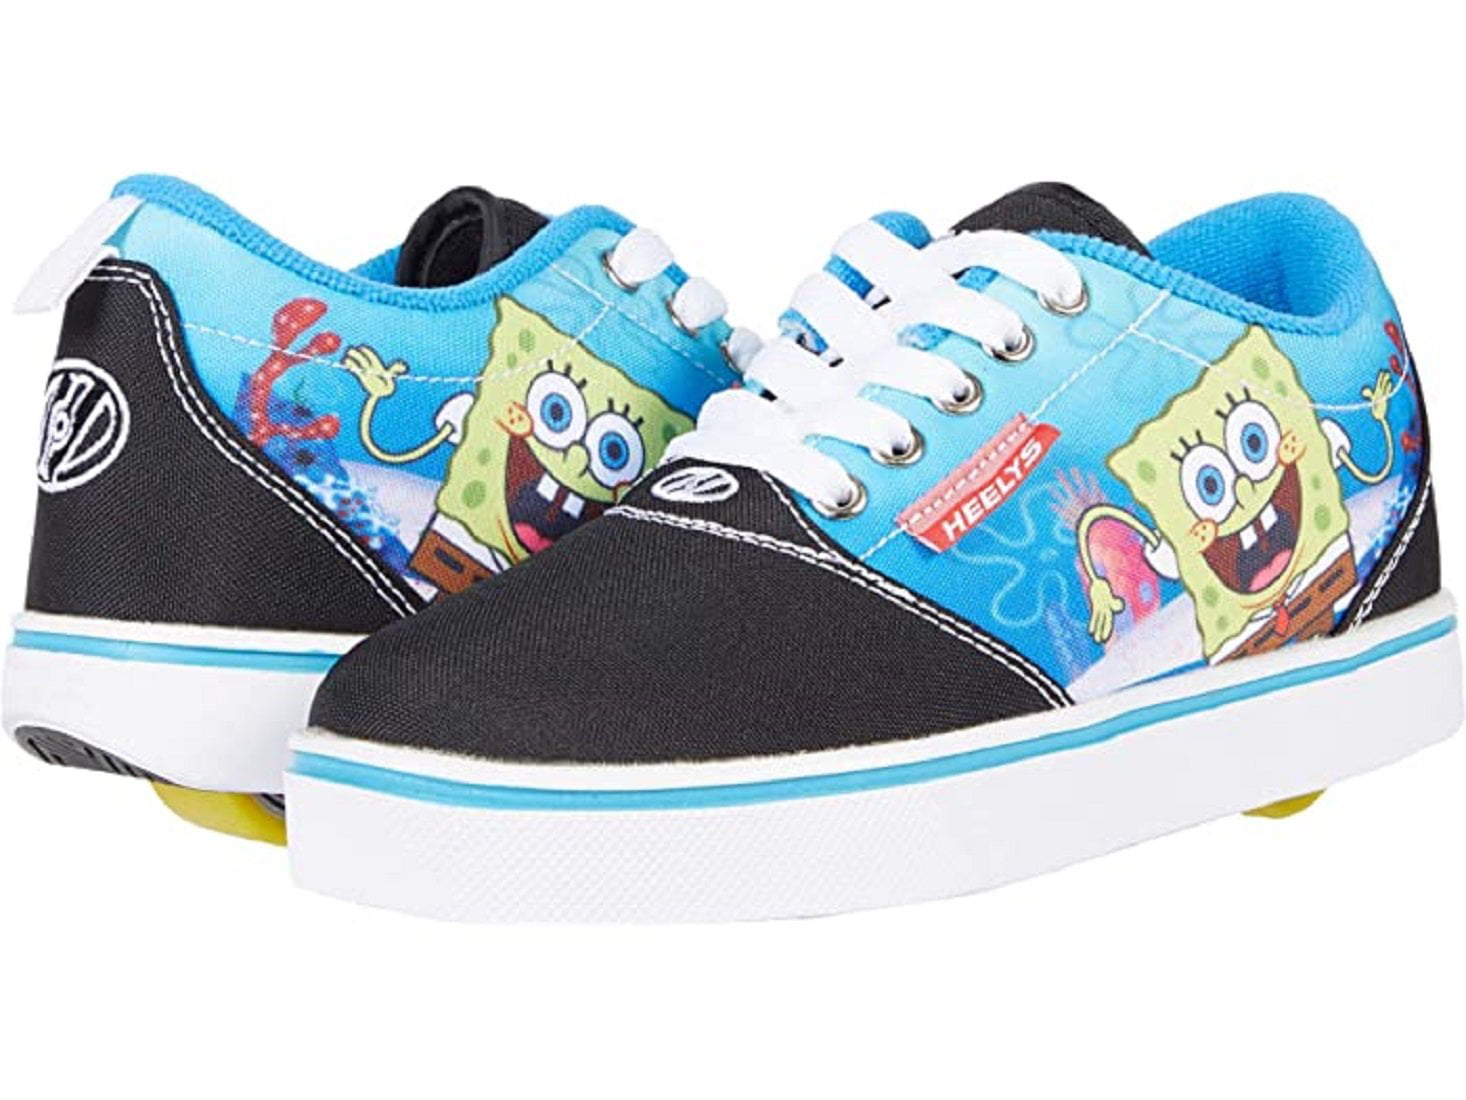 Spongebob Wheelies Wheels Sneaker Shoes 